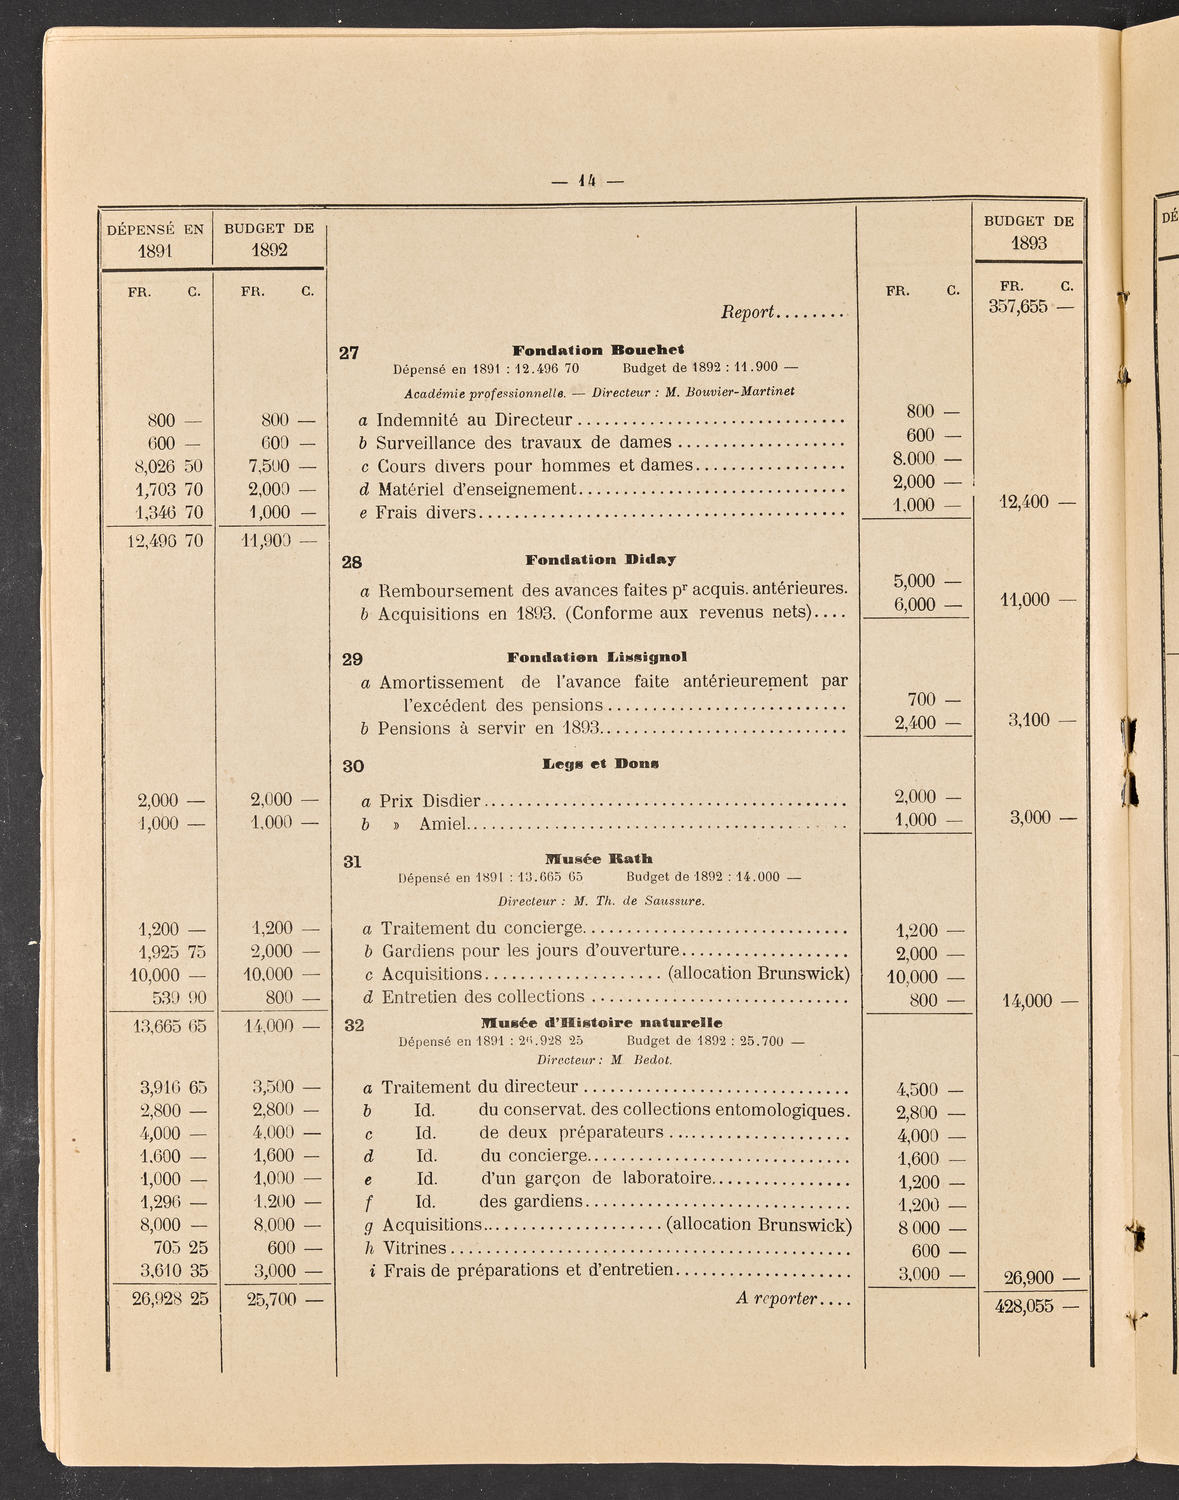 Budget de la Ville de Genève - Exercise de 1893, page 20 of 32